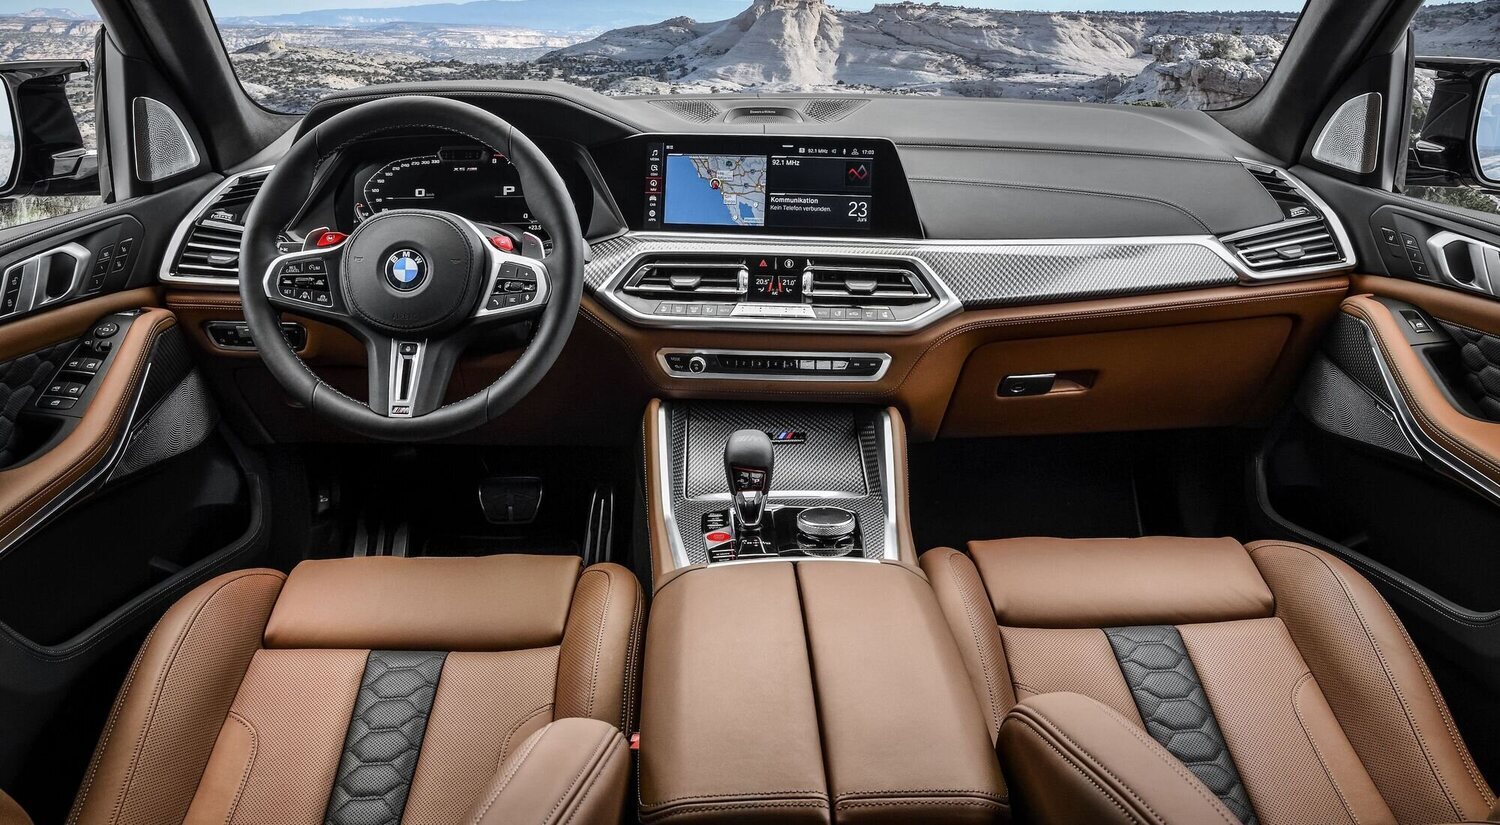 BMW cobrará 18€ al mes por asientos con calefacción, a pesar de que la función ya está instalada en los coches